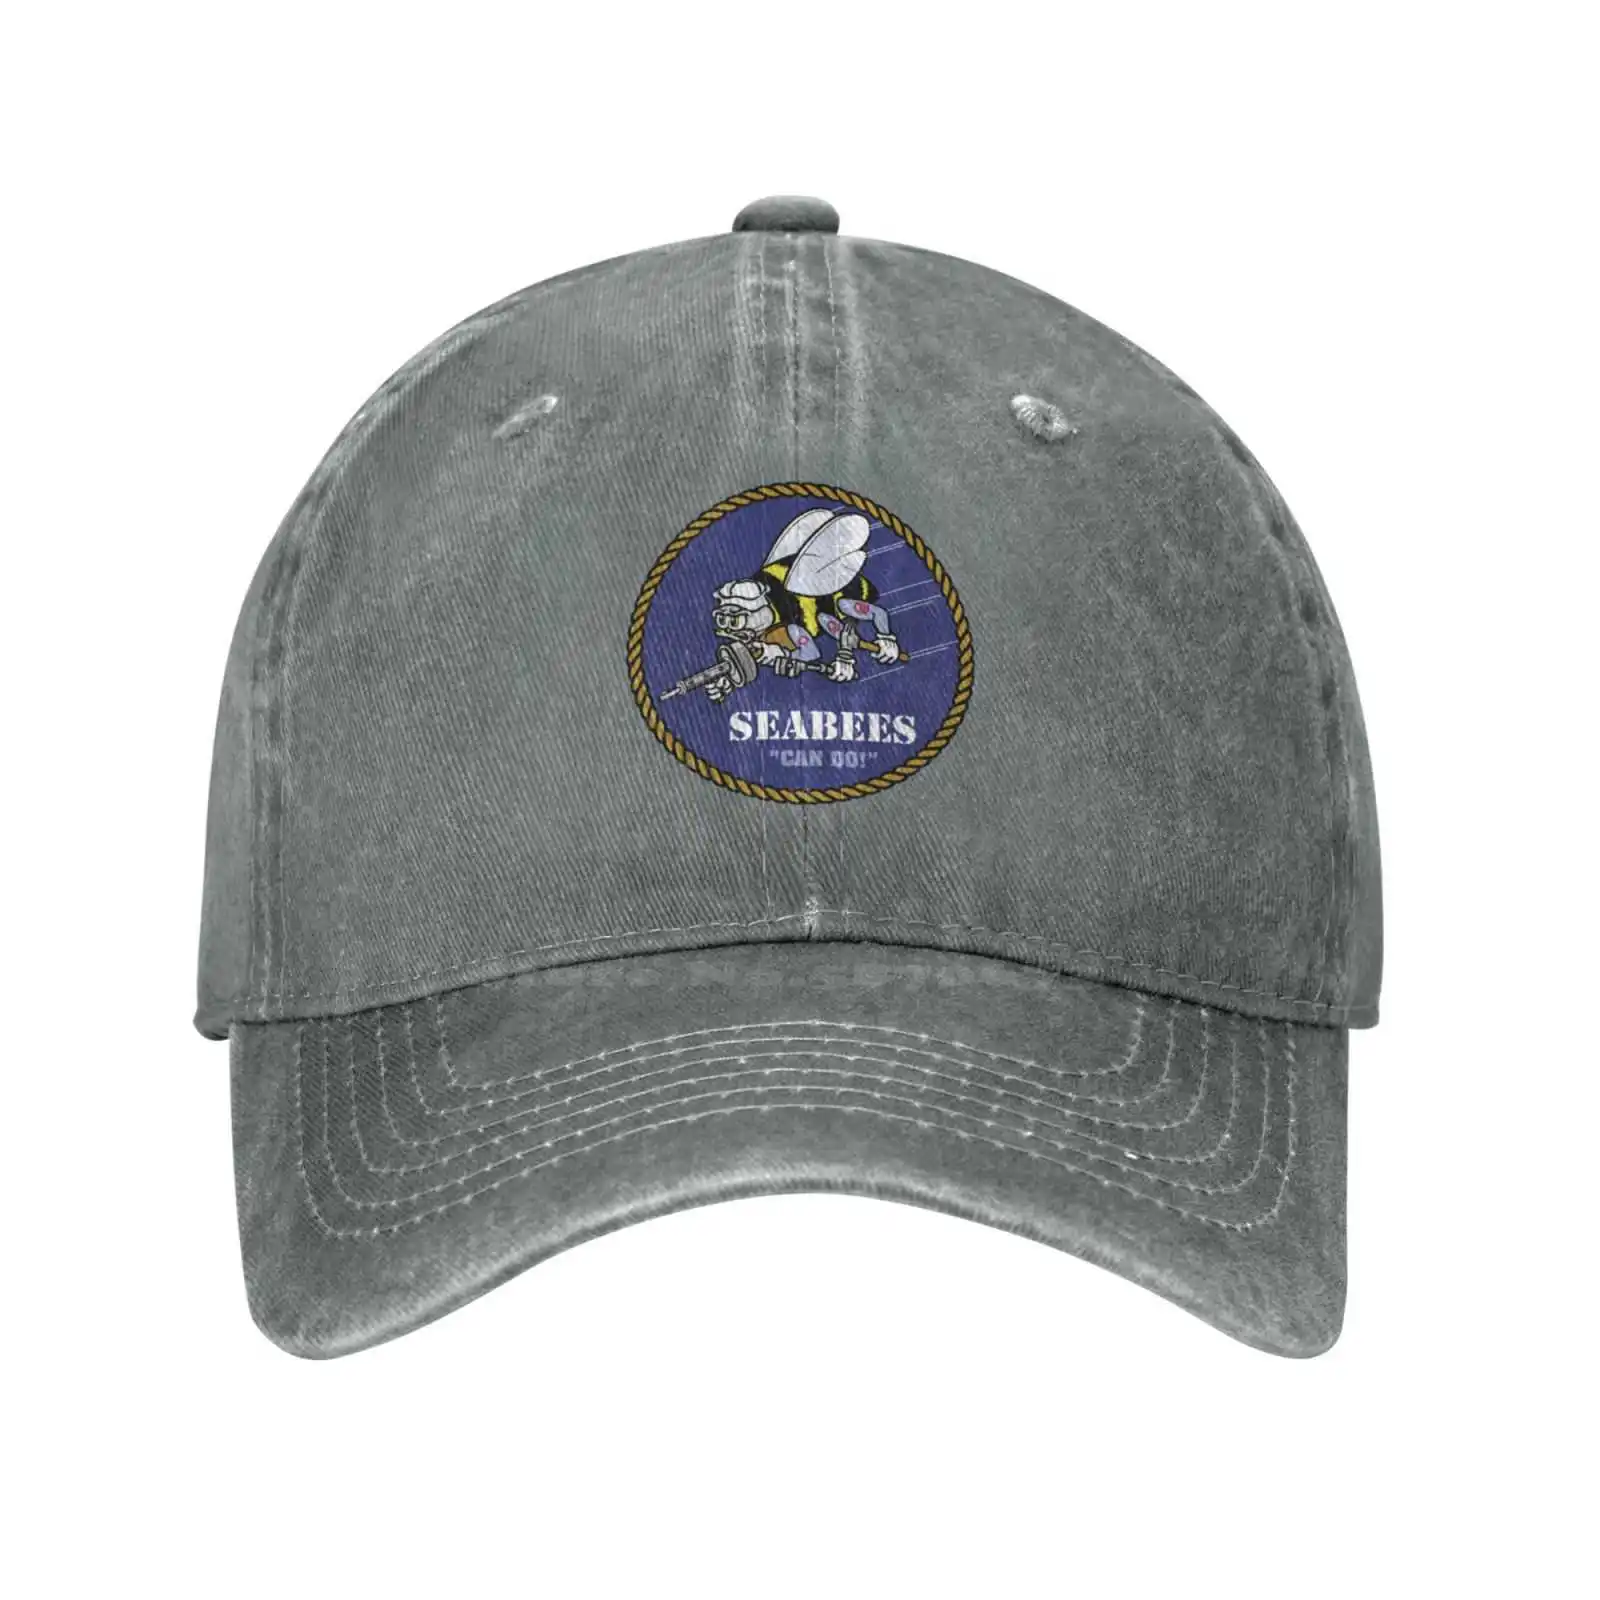 Графическая кепка с логотипом Seabees, высококачественная джинсовая кепка, вязаная шапка, бейсболка . ' - ' . 4